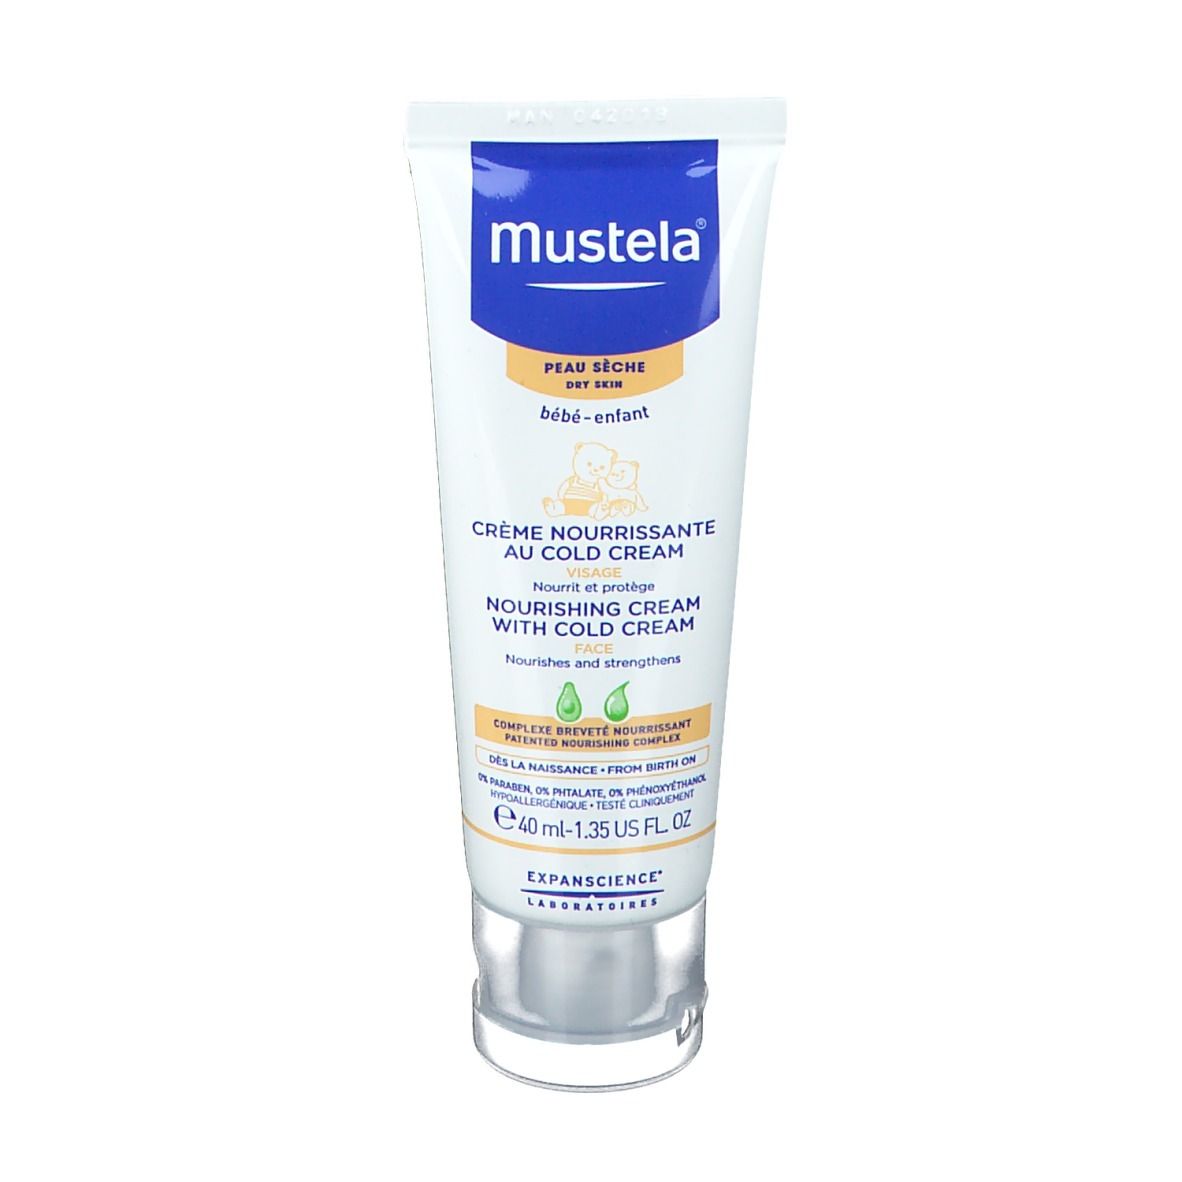 Mustela® Bébé Crema Nutriente alla Cold Cream Viso